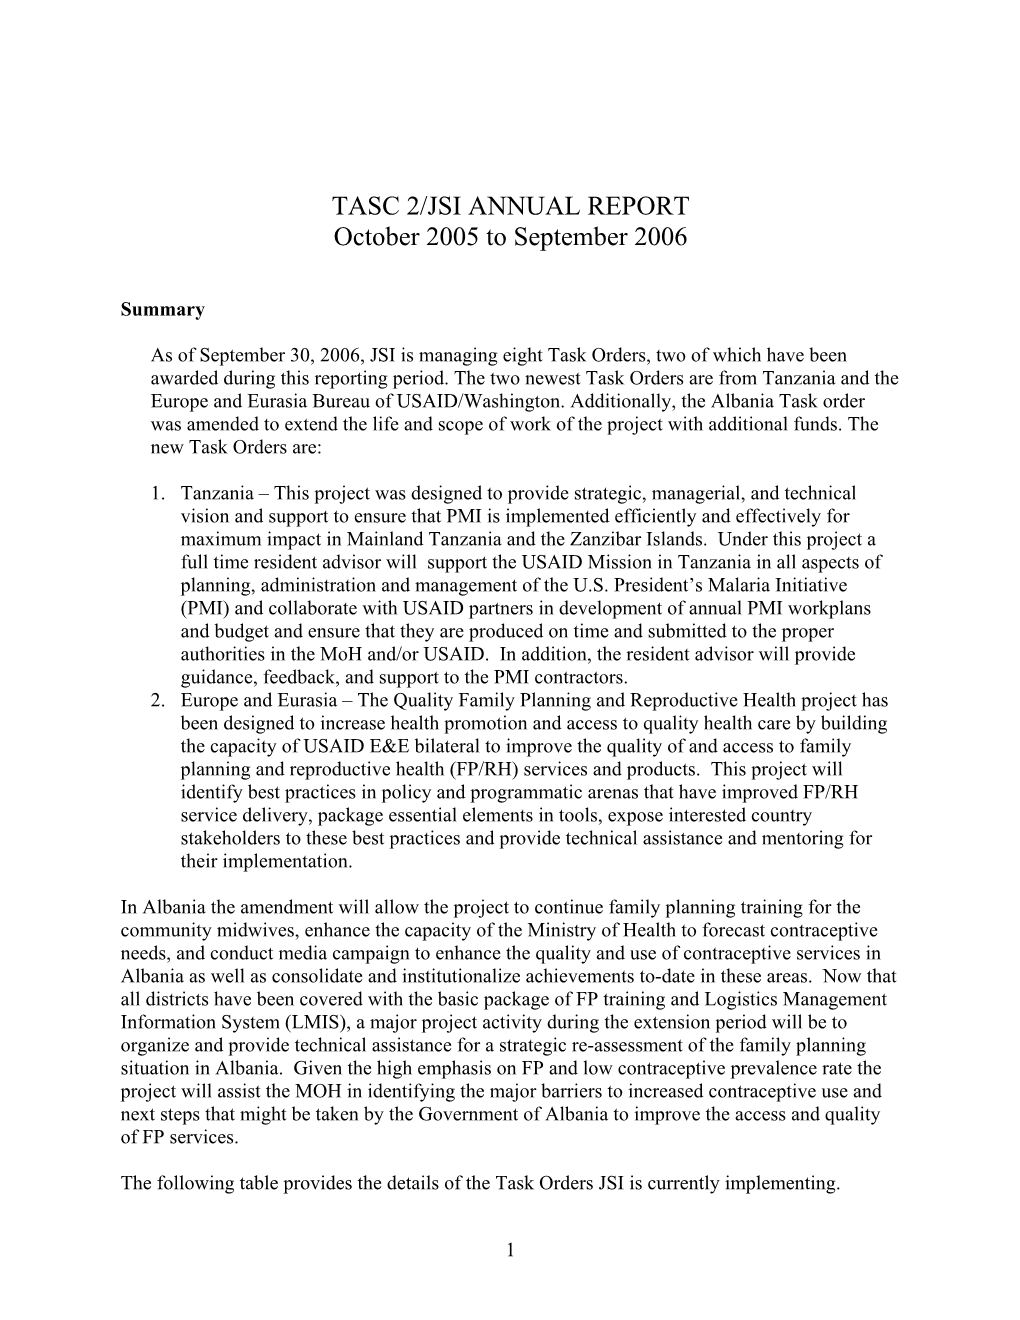 TASC 2/JSI ANNUAL REPORT October 2005 to September 2006